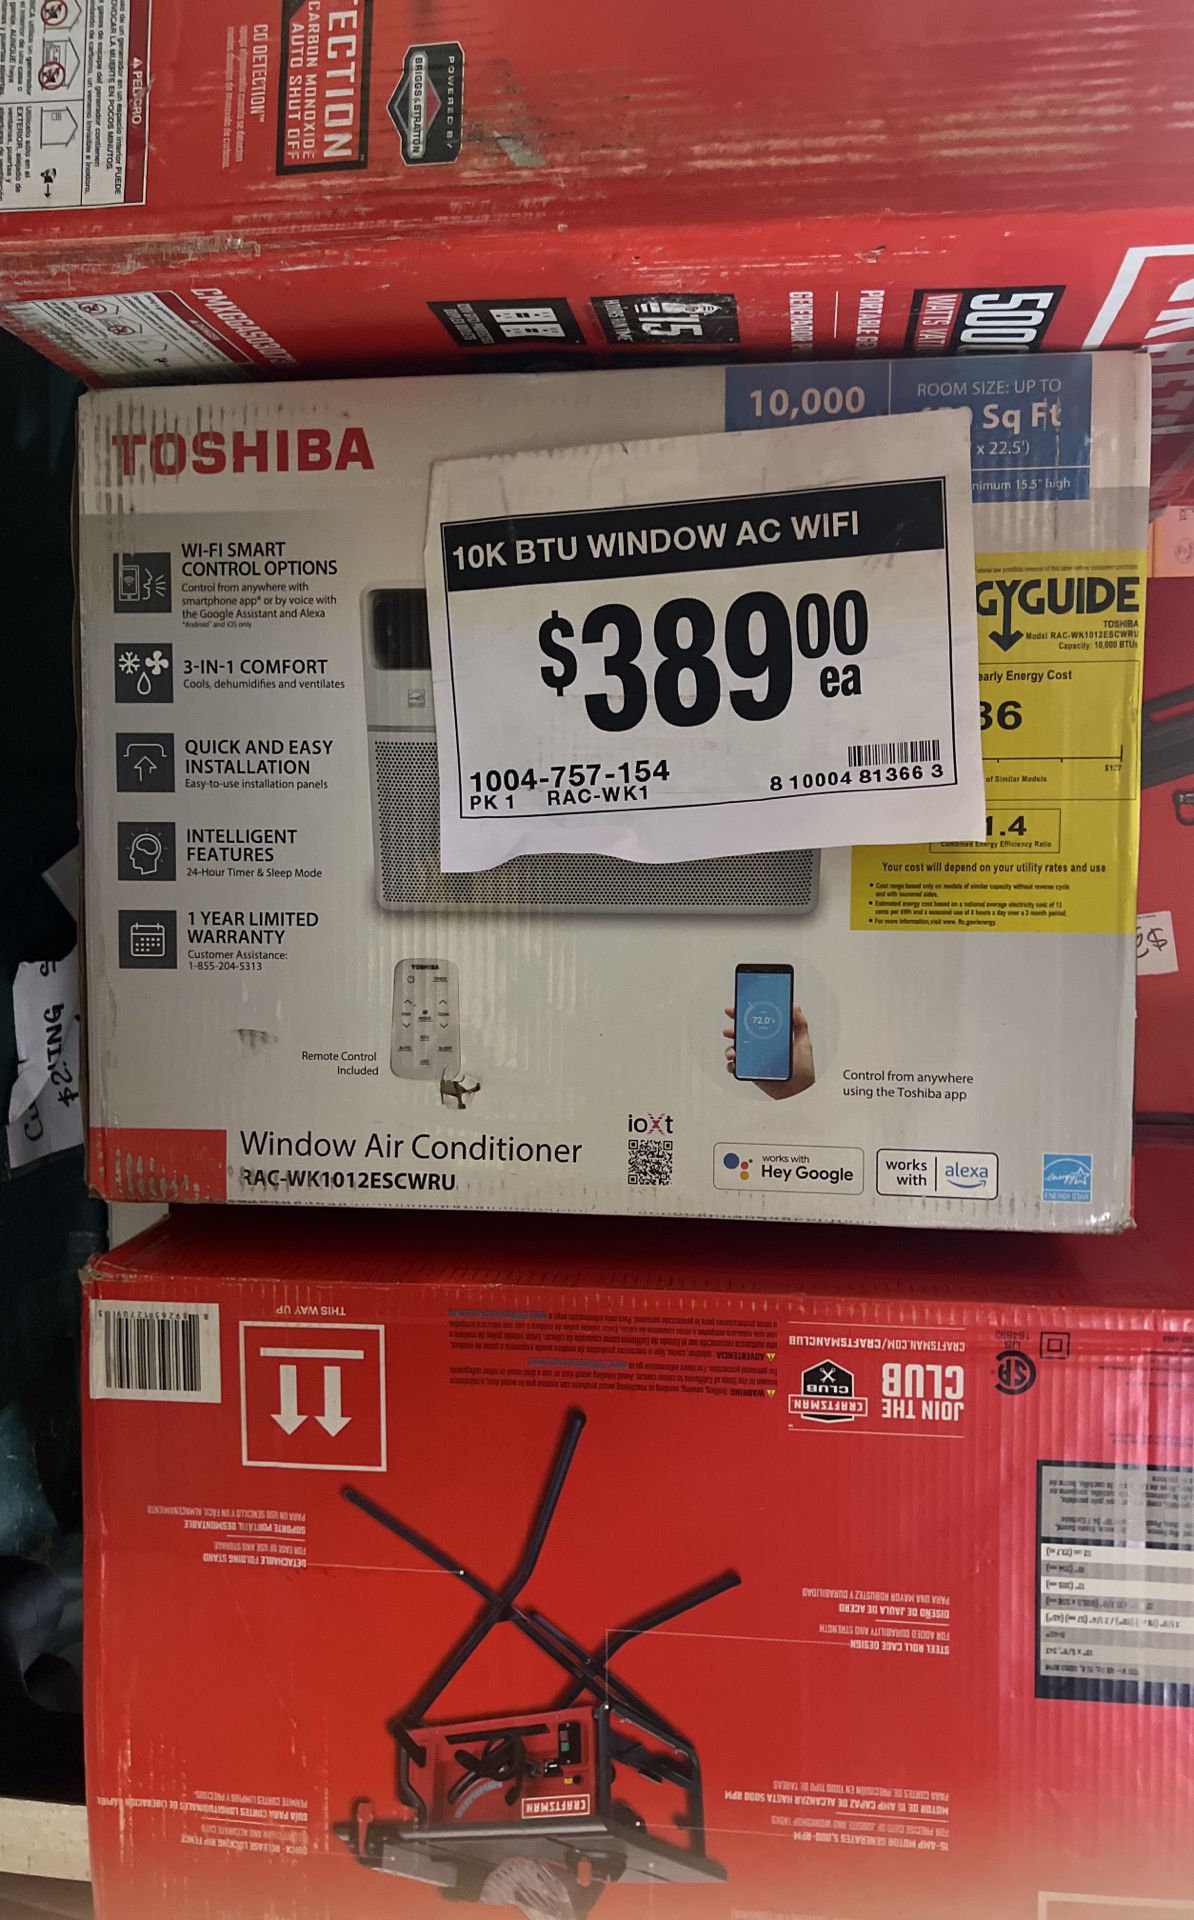 Toshiba 10k BTU Window AC wifi !